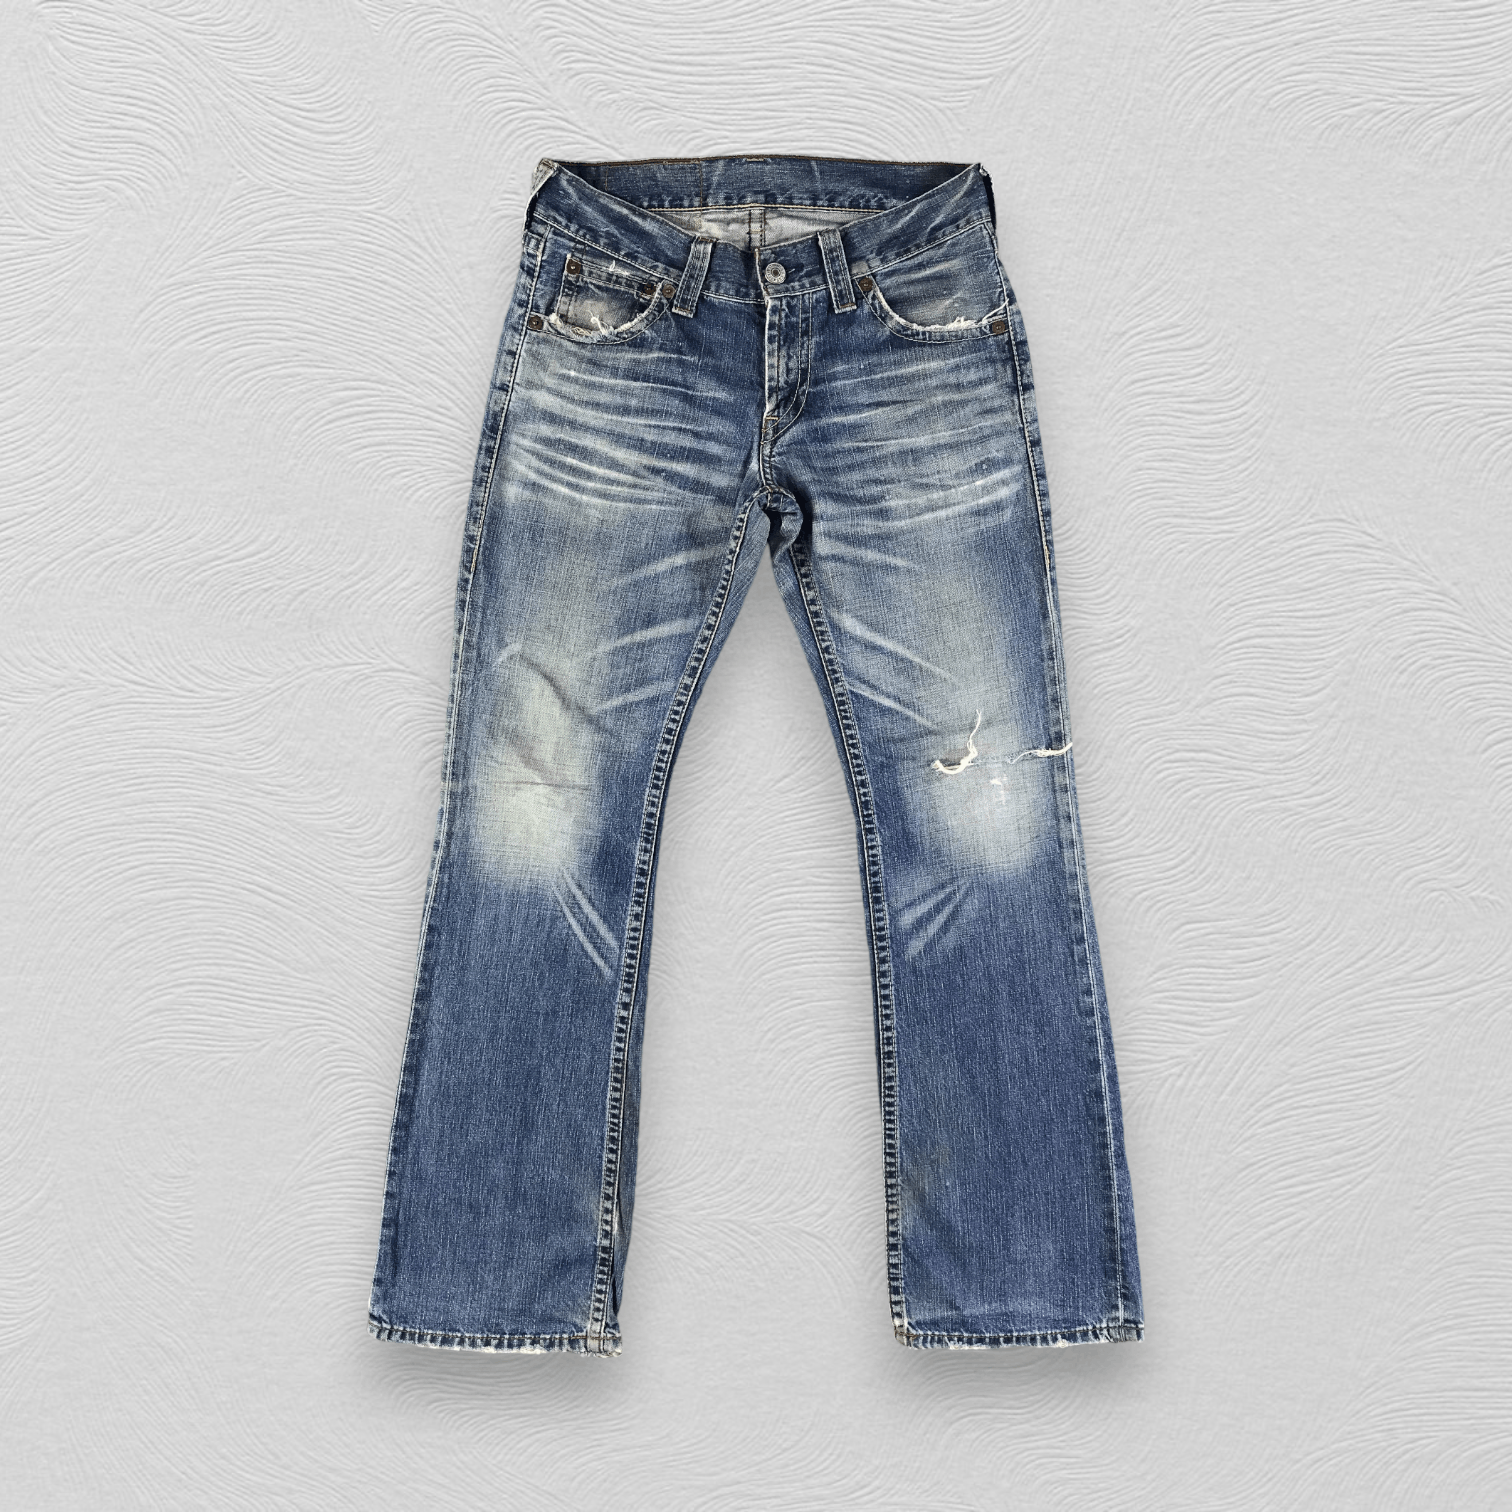 Vintage Vintage Levis 507 Jeans Distressed Flare Denim KJ1715 | Grailed